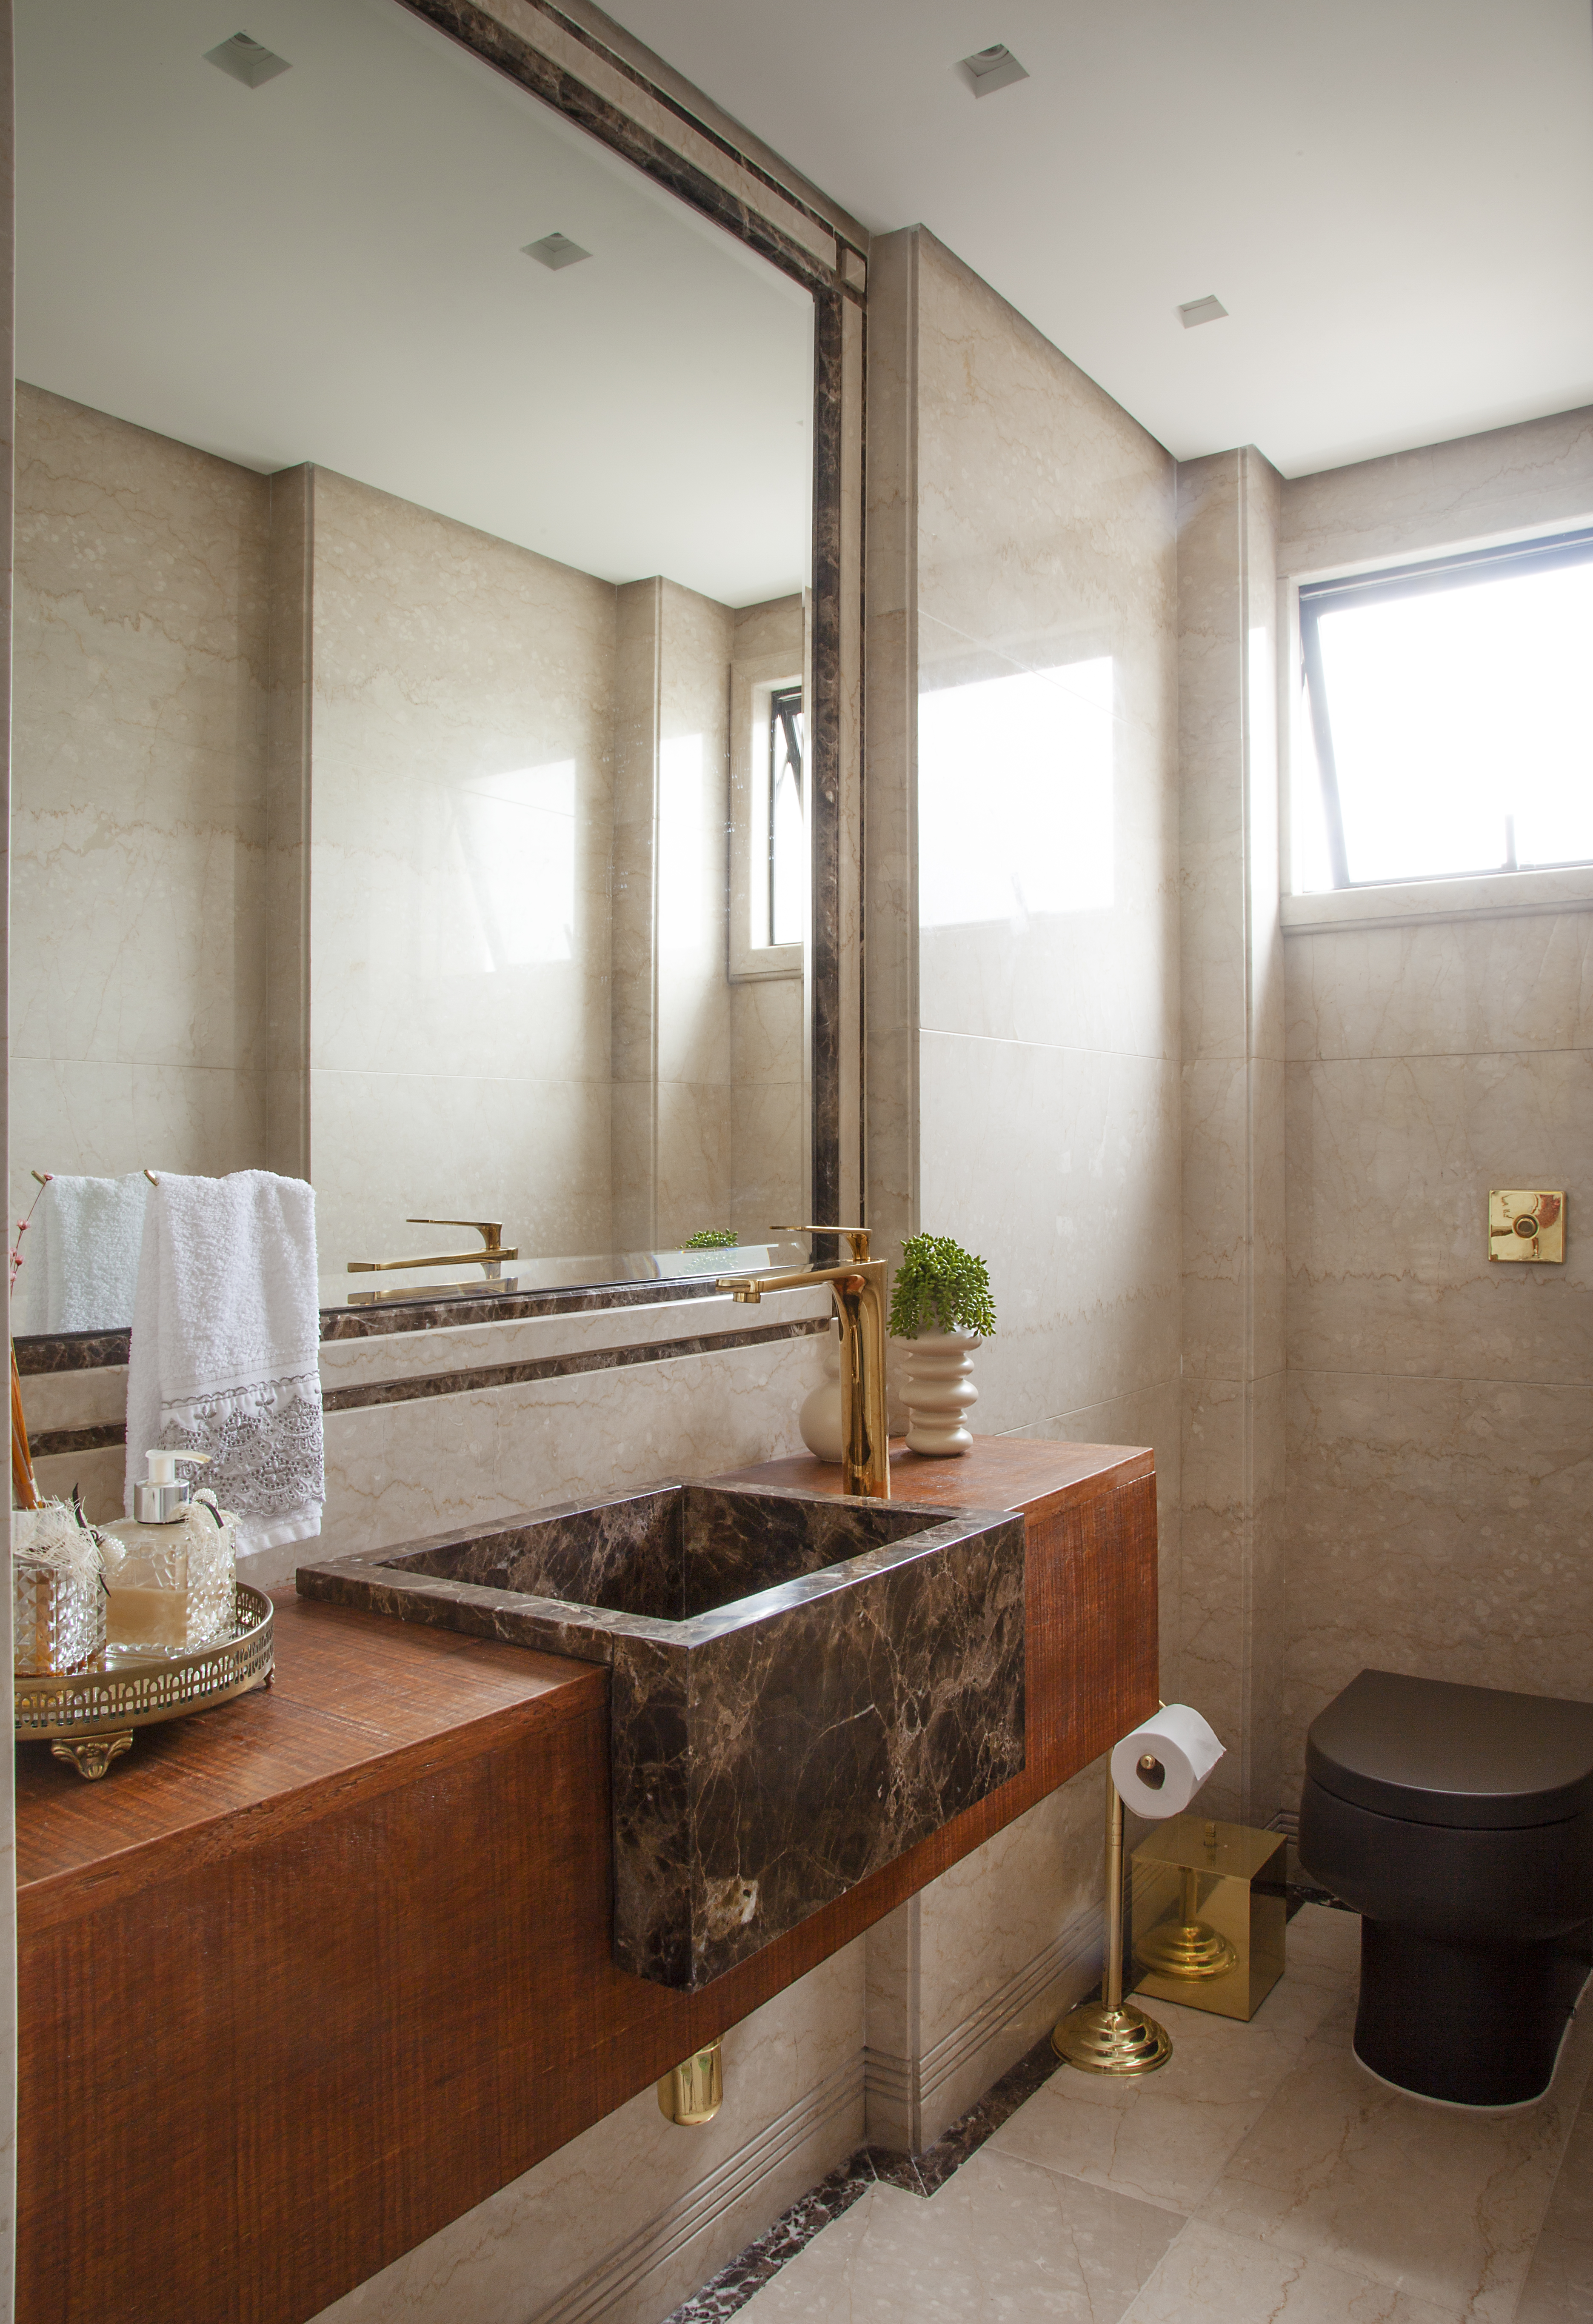 Projeto de Carina Dal Fabbro. Na foto, lavabo com bancada de madeira de demolição e cuba marmorizada.